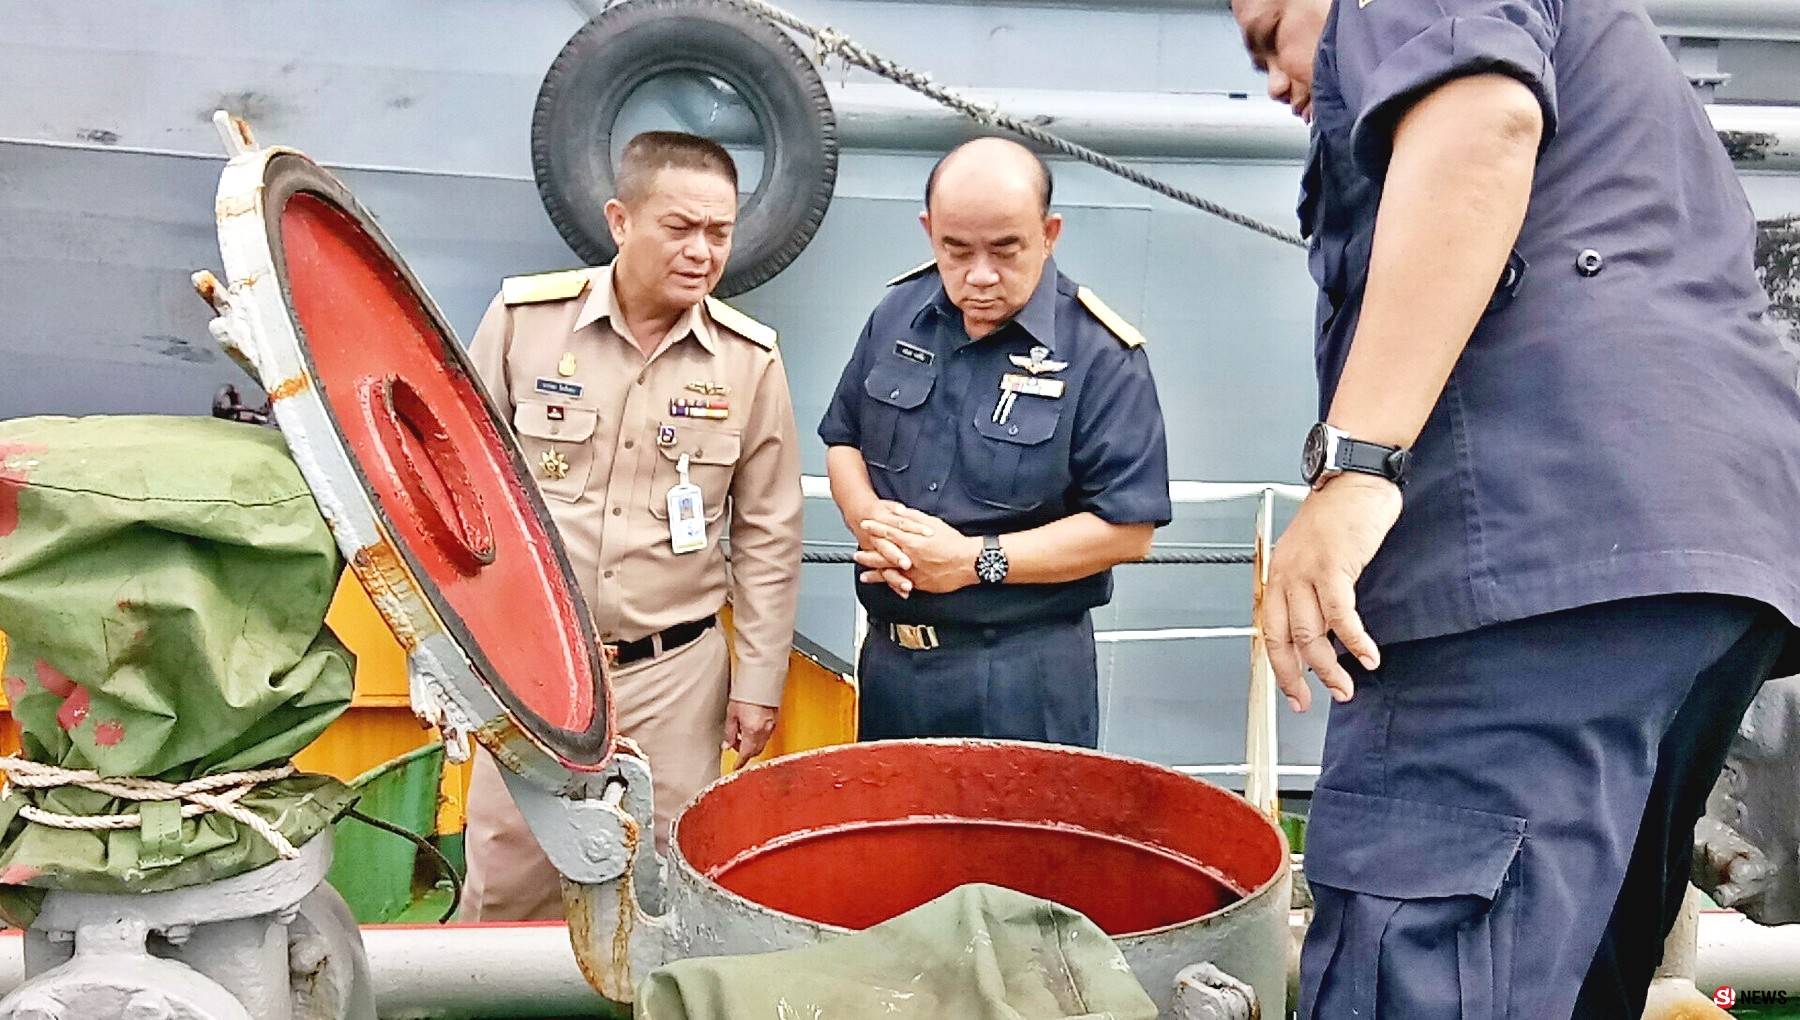 2.4 แสนลิตร จับเรือลอบขนดีเซลเถื่อนกลางทะเลอ่าวไทย